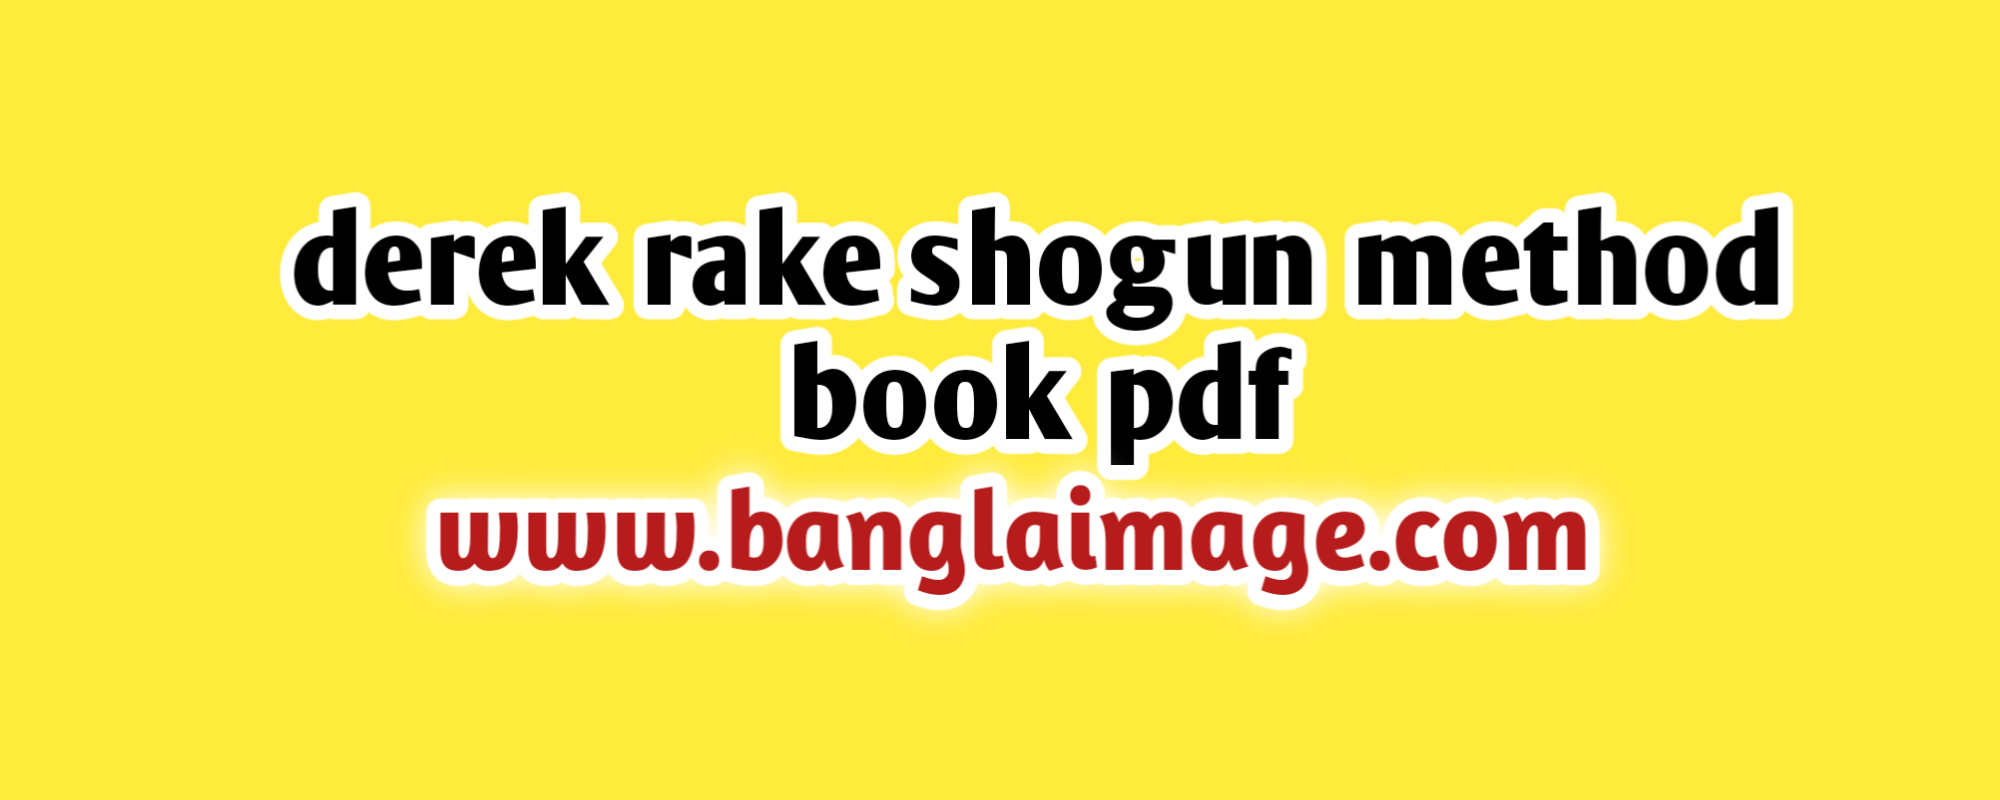 derek rake shogun method book pdf, derek rake shogun method book pdf online, derek rake shogun method book pdf free, the derek rake shogun method book pdf online